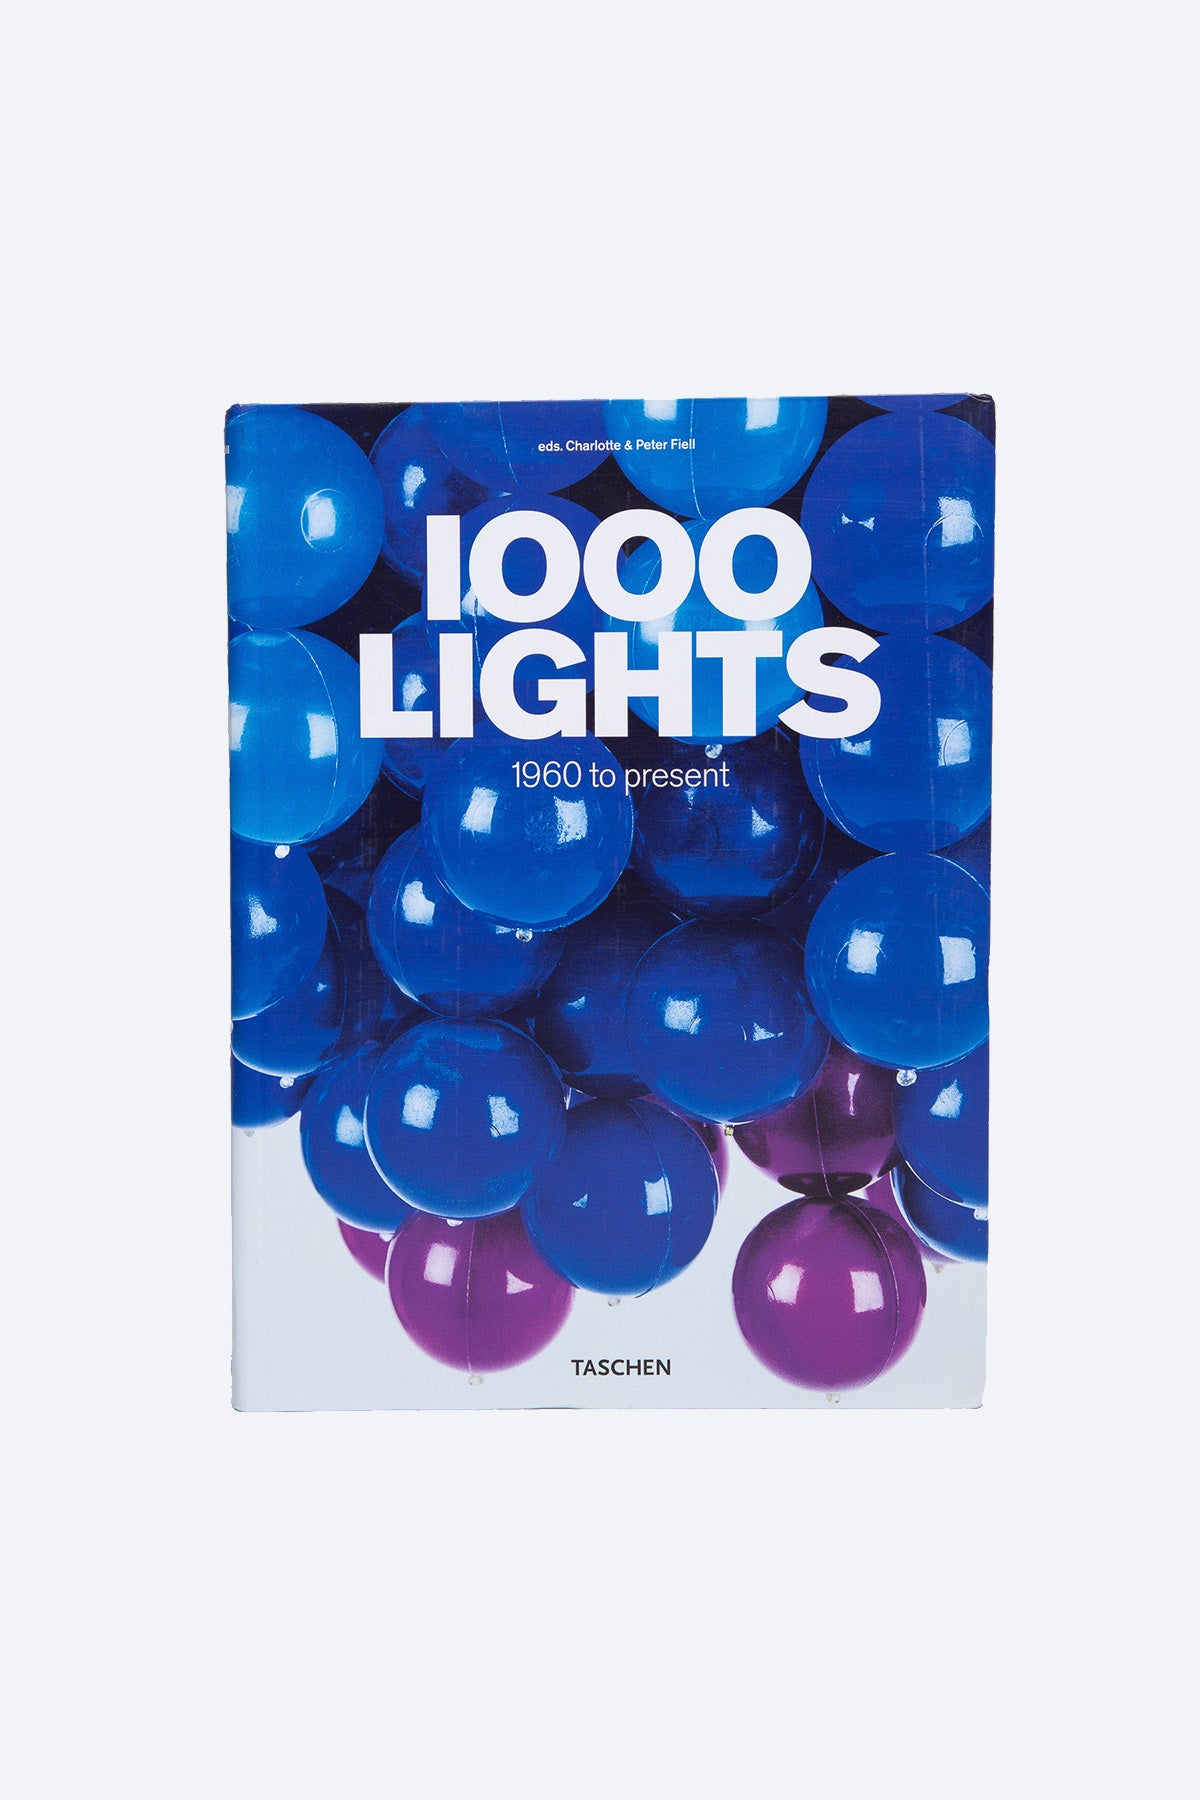 TASCHEN | 1000 LIGHTS 1960-PRESENT